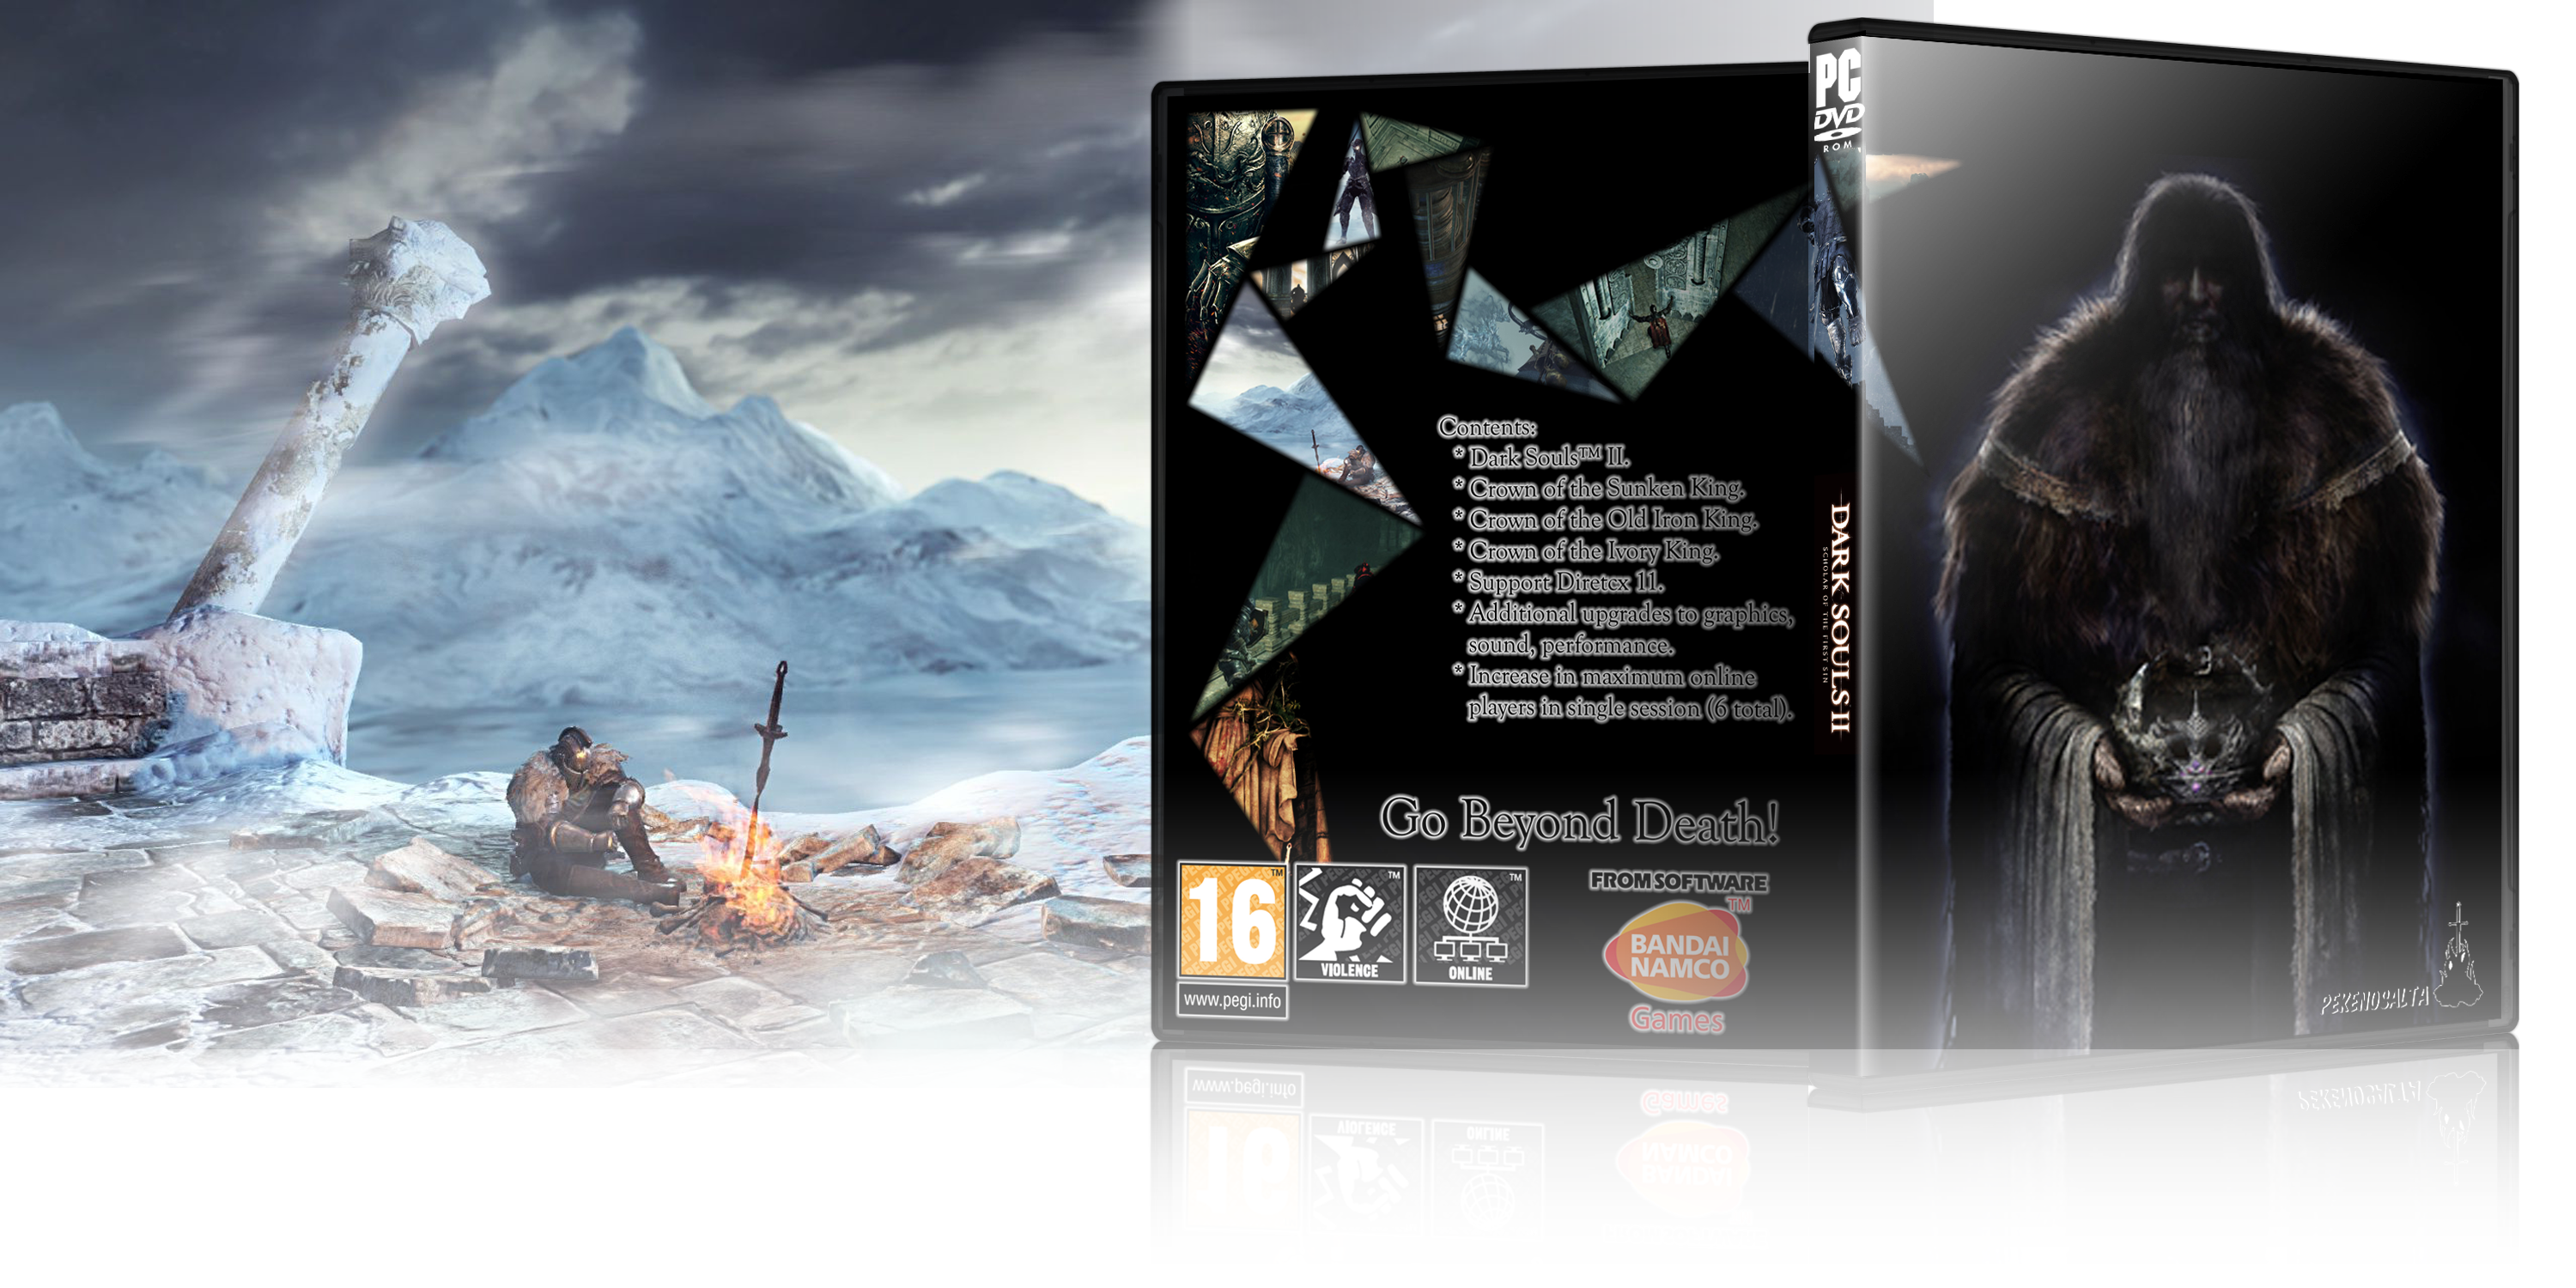 Dark Souls II box cover